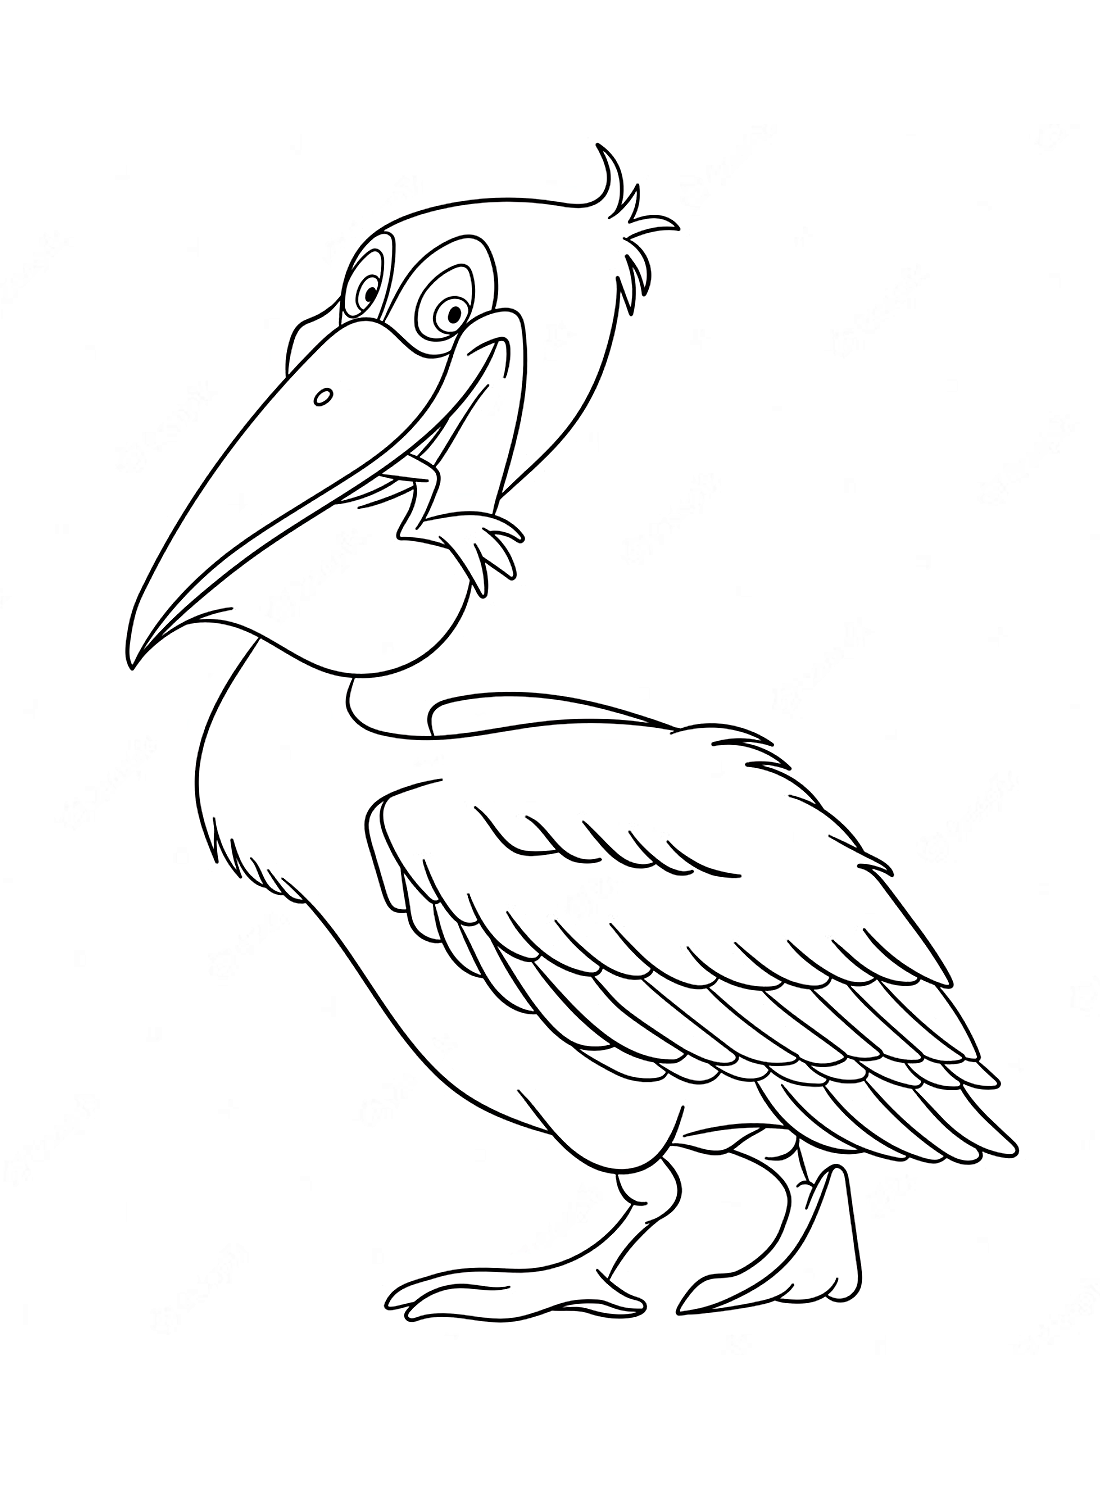 Pellicano gratuito e stampabile da Pelican